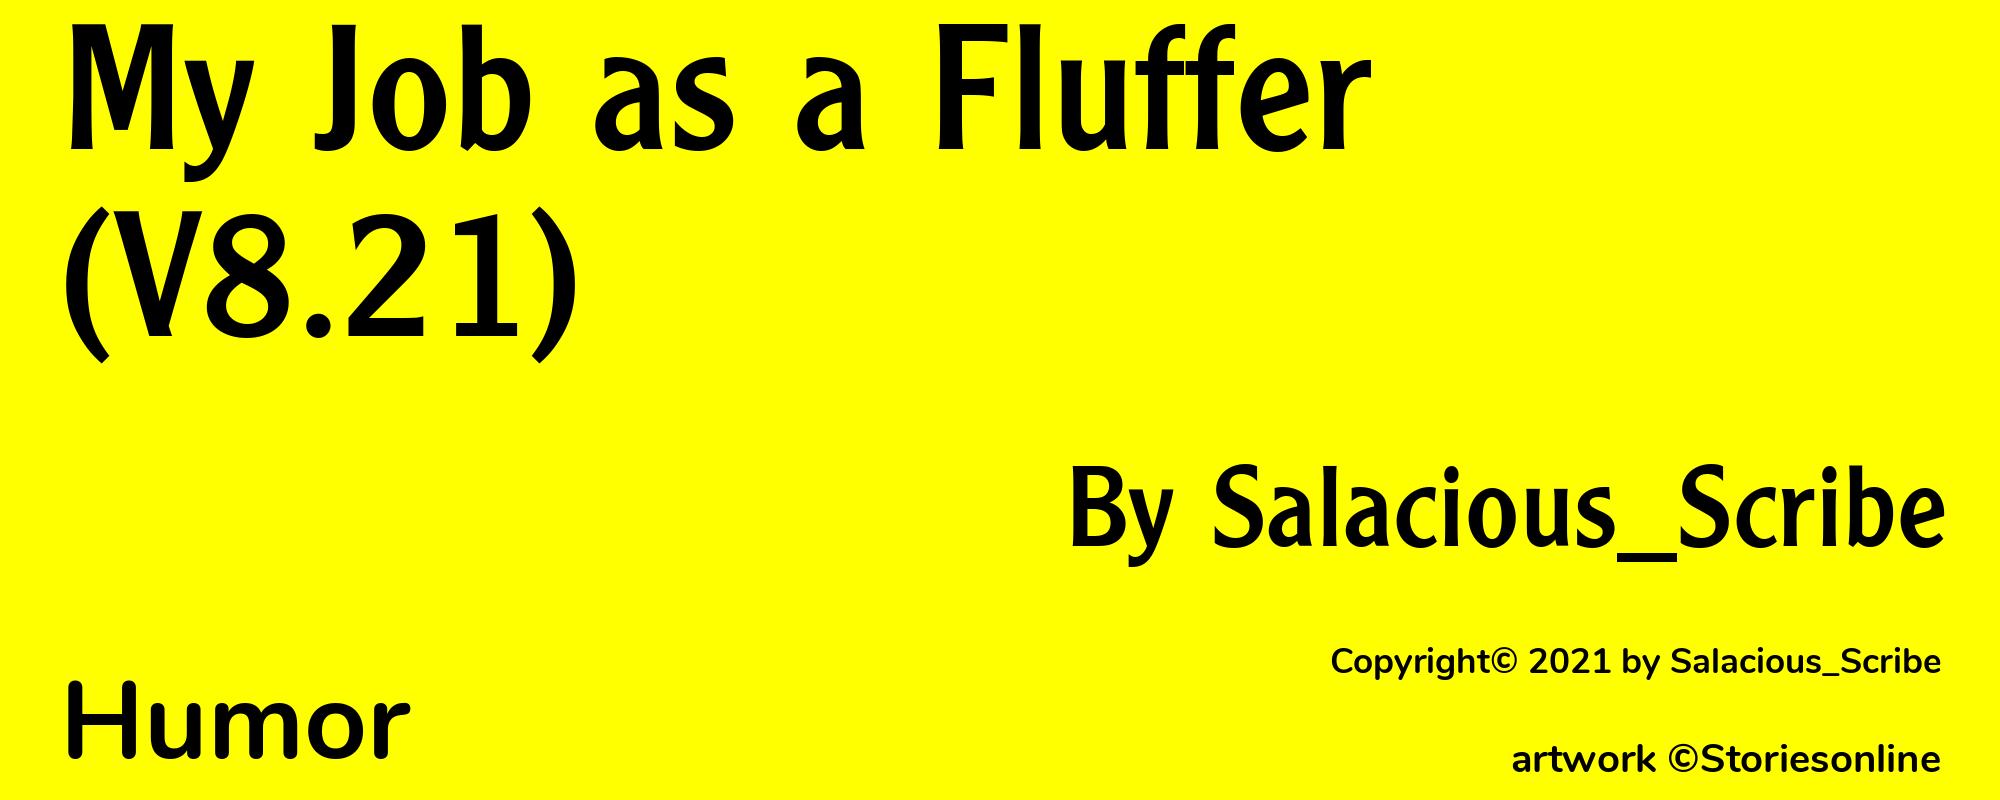 My Job as a Fluffer (V8.21) - Cover